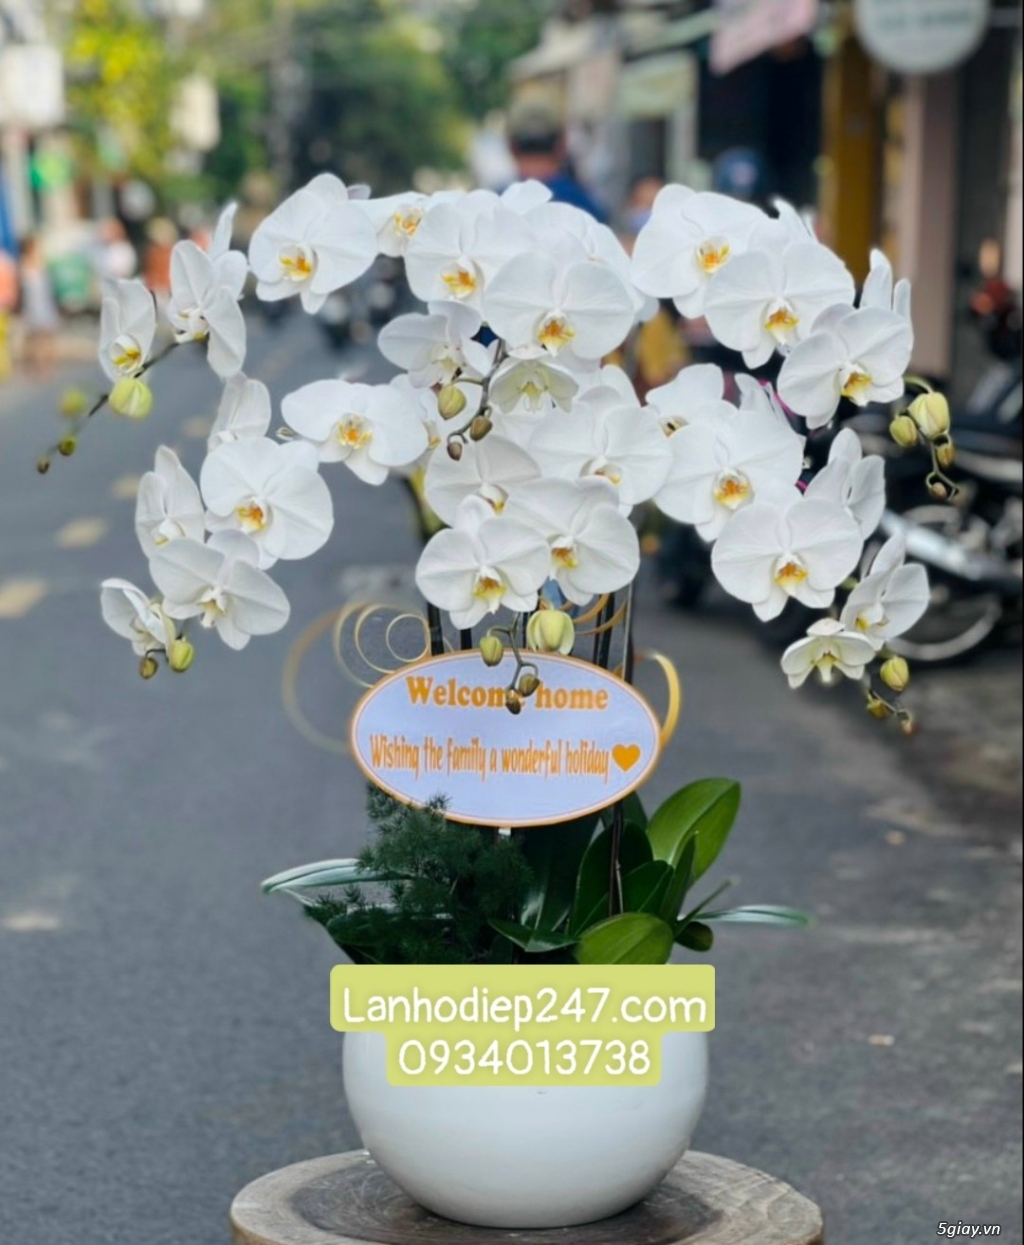 Shop hoa tươi chuyên cung cấp Lan Hồ Điệp VIP nhất Sài Gòn 0934013738 - 10